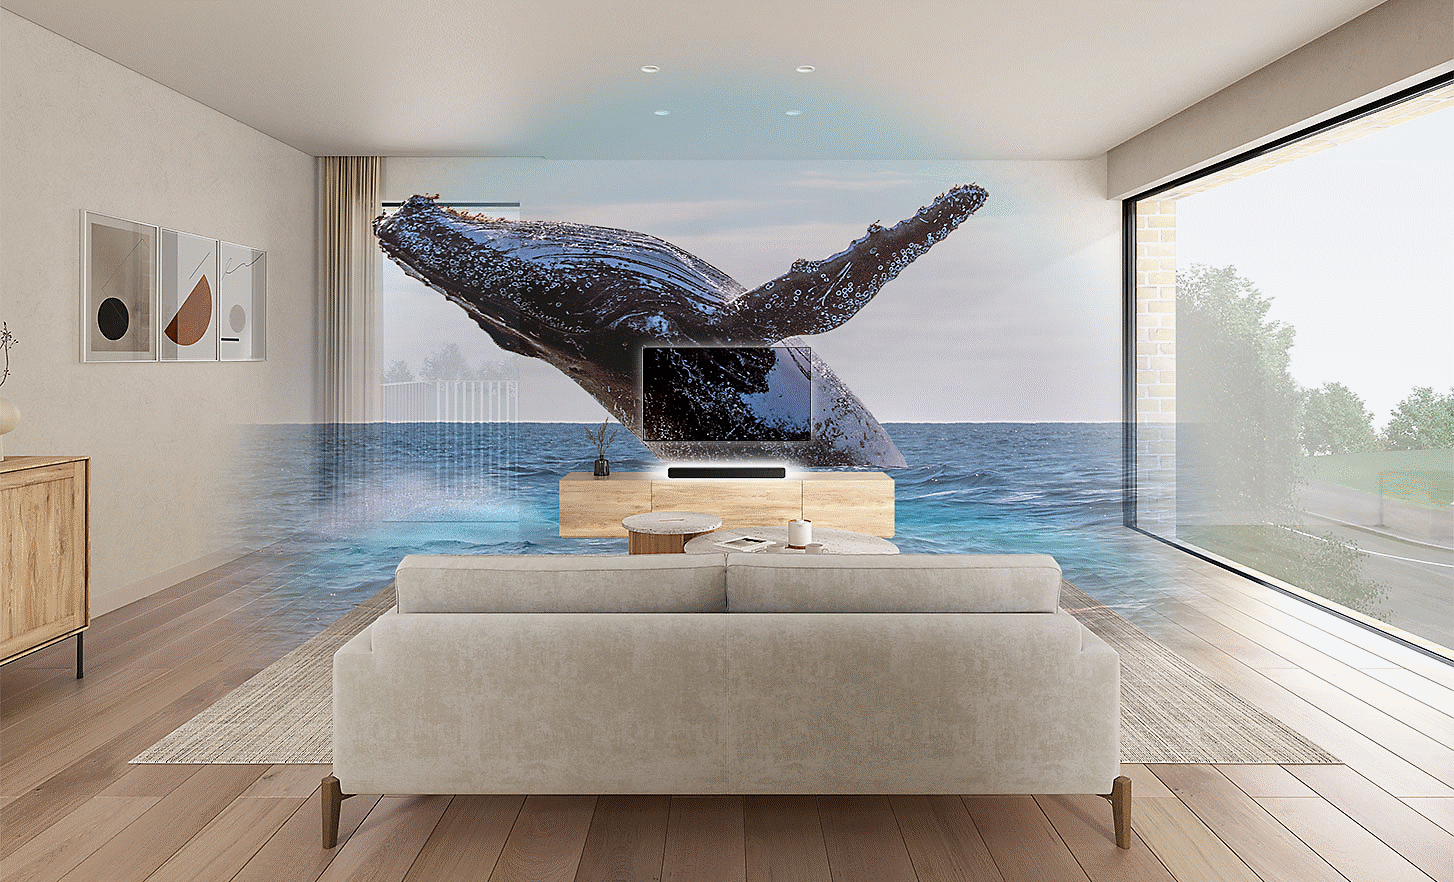 Imagen de una sala de estar con un TV y una Sound Bar HT-S2000 en el centro, una imagen con marca de agua de una ballena encima